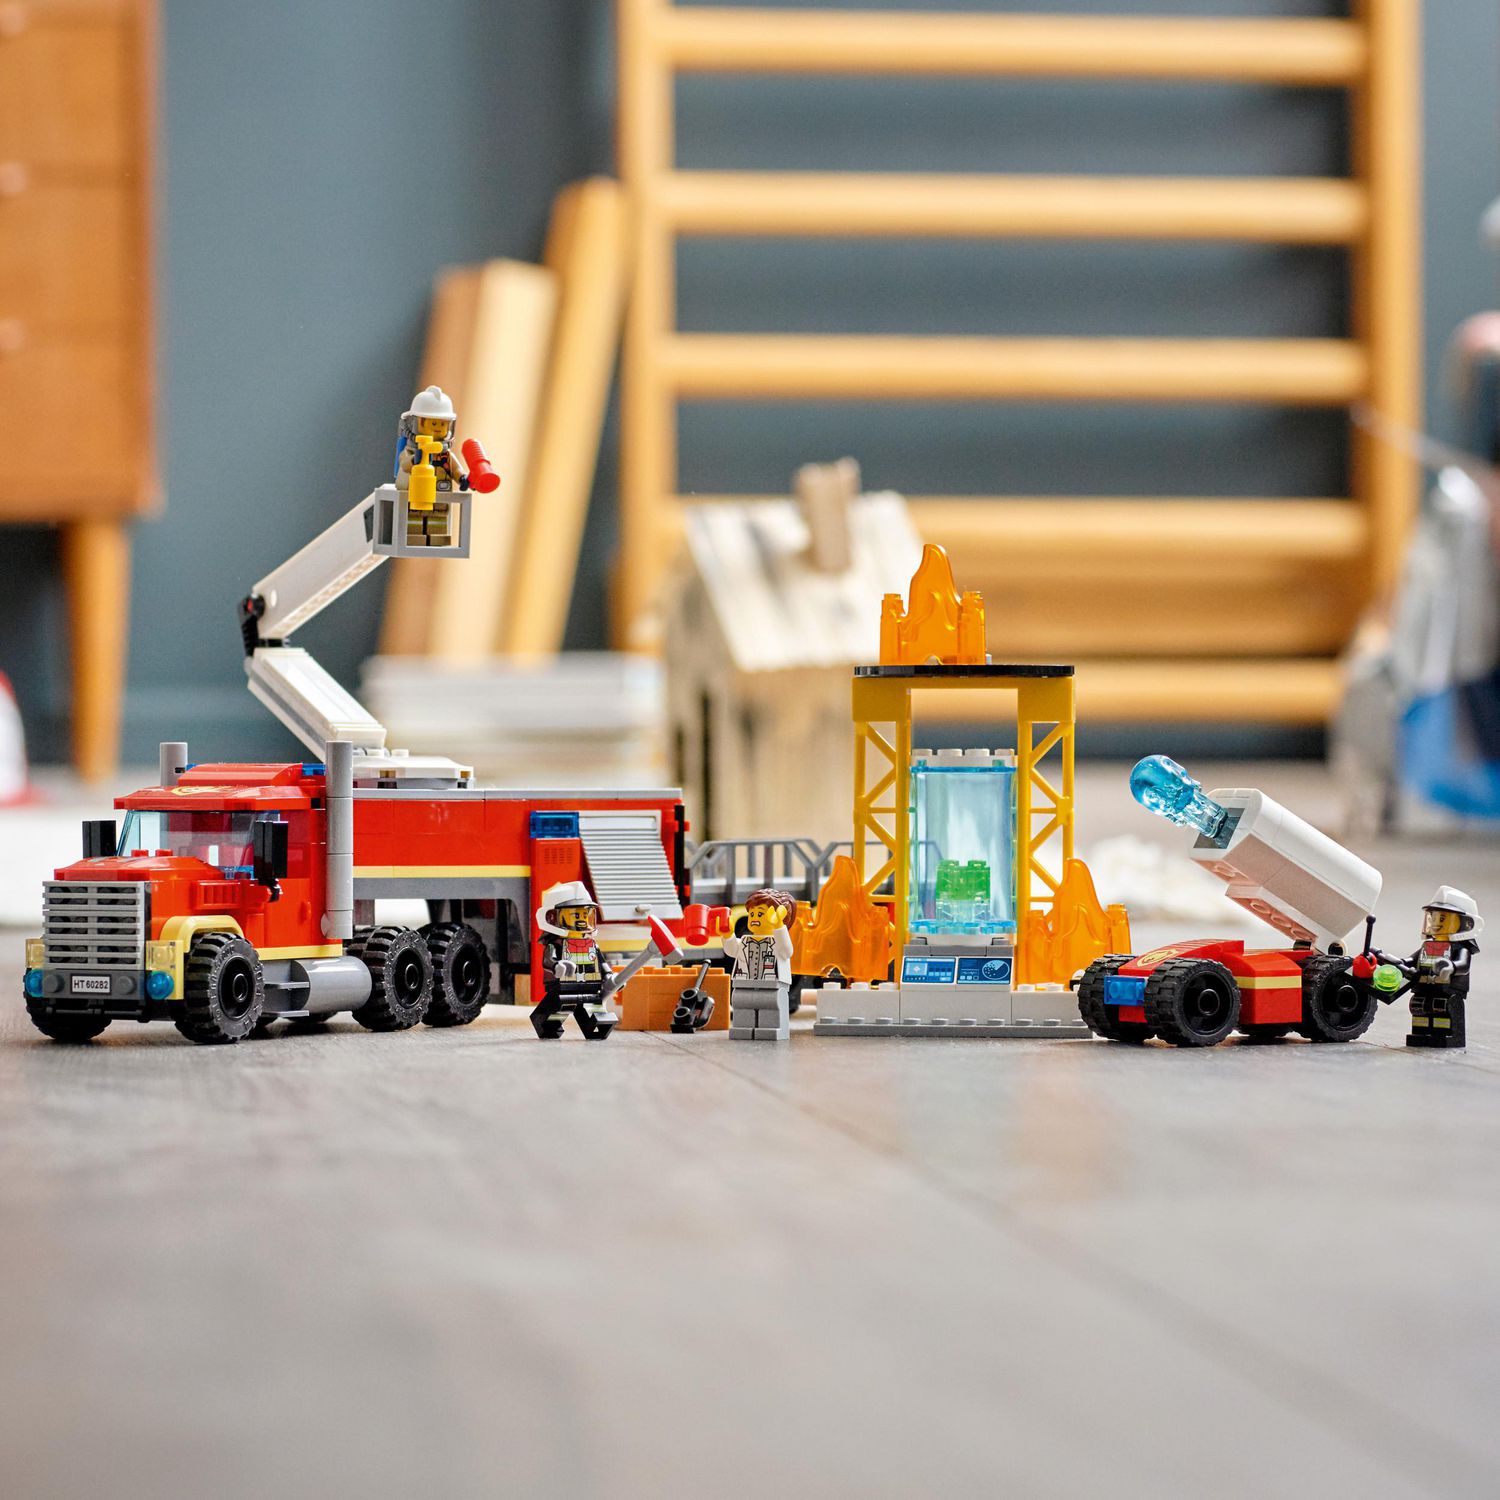 LEGO City 60282 L'unité de Commandement des Pompiers